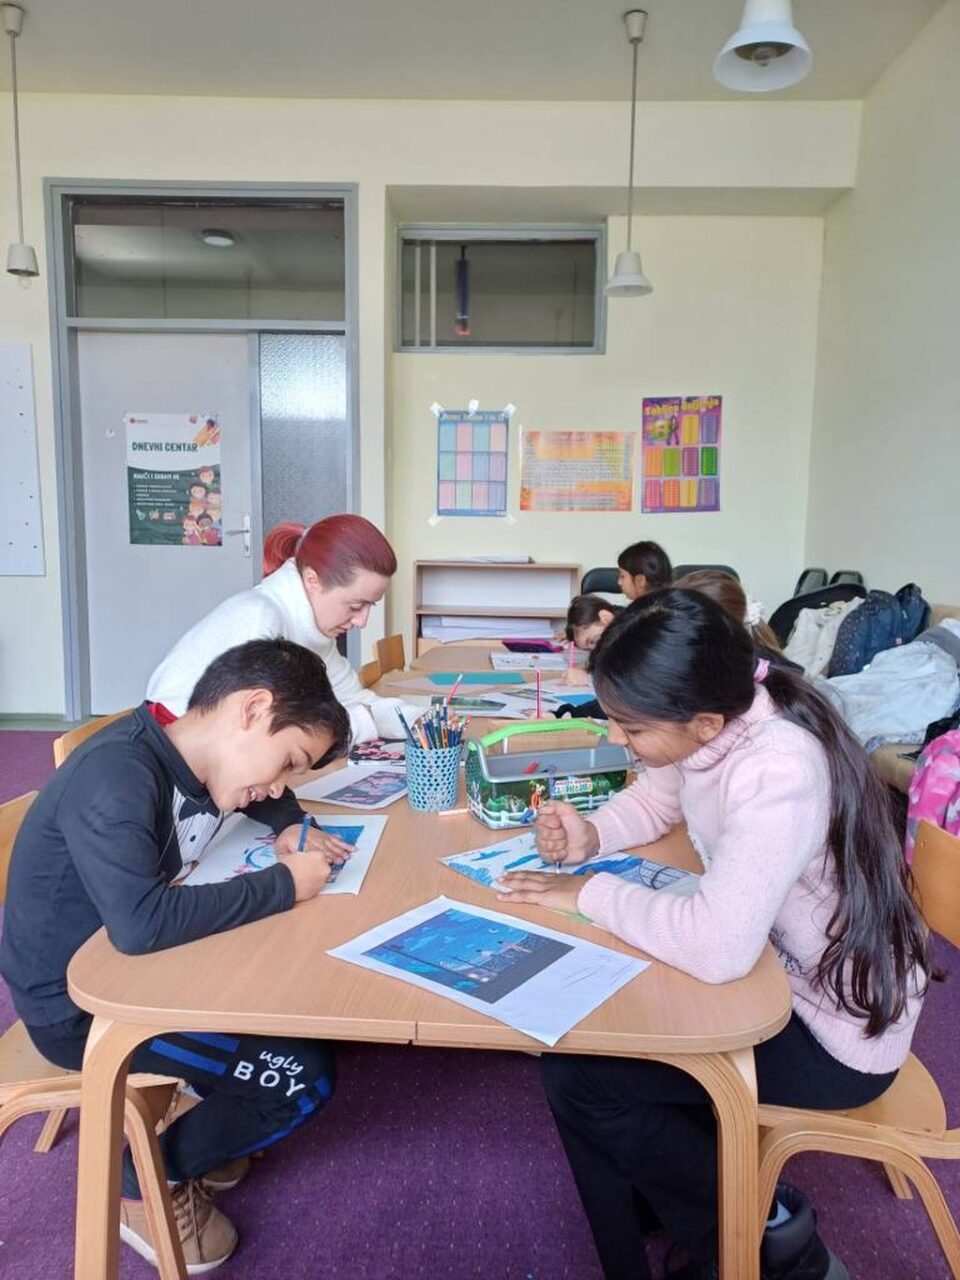 Projekt FRIEND koji realizira Caritas biskupije Banja Luka središte je aktivnosti za tridesetak romske djece u Bihaću